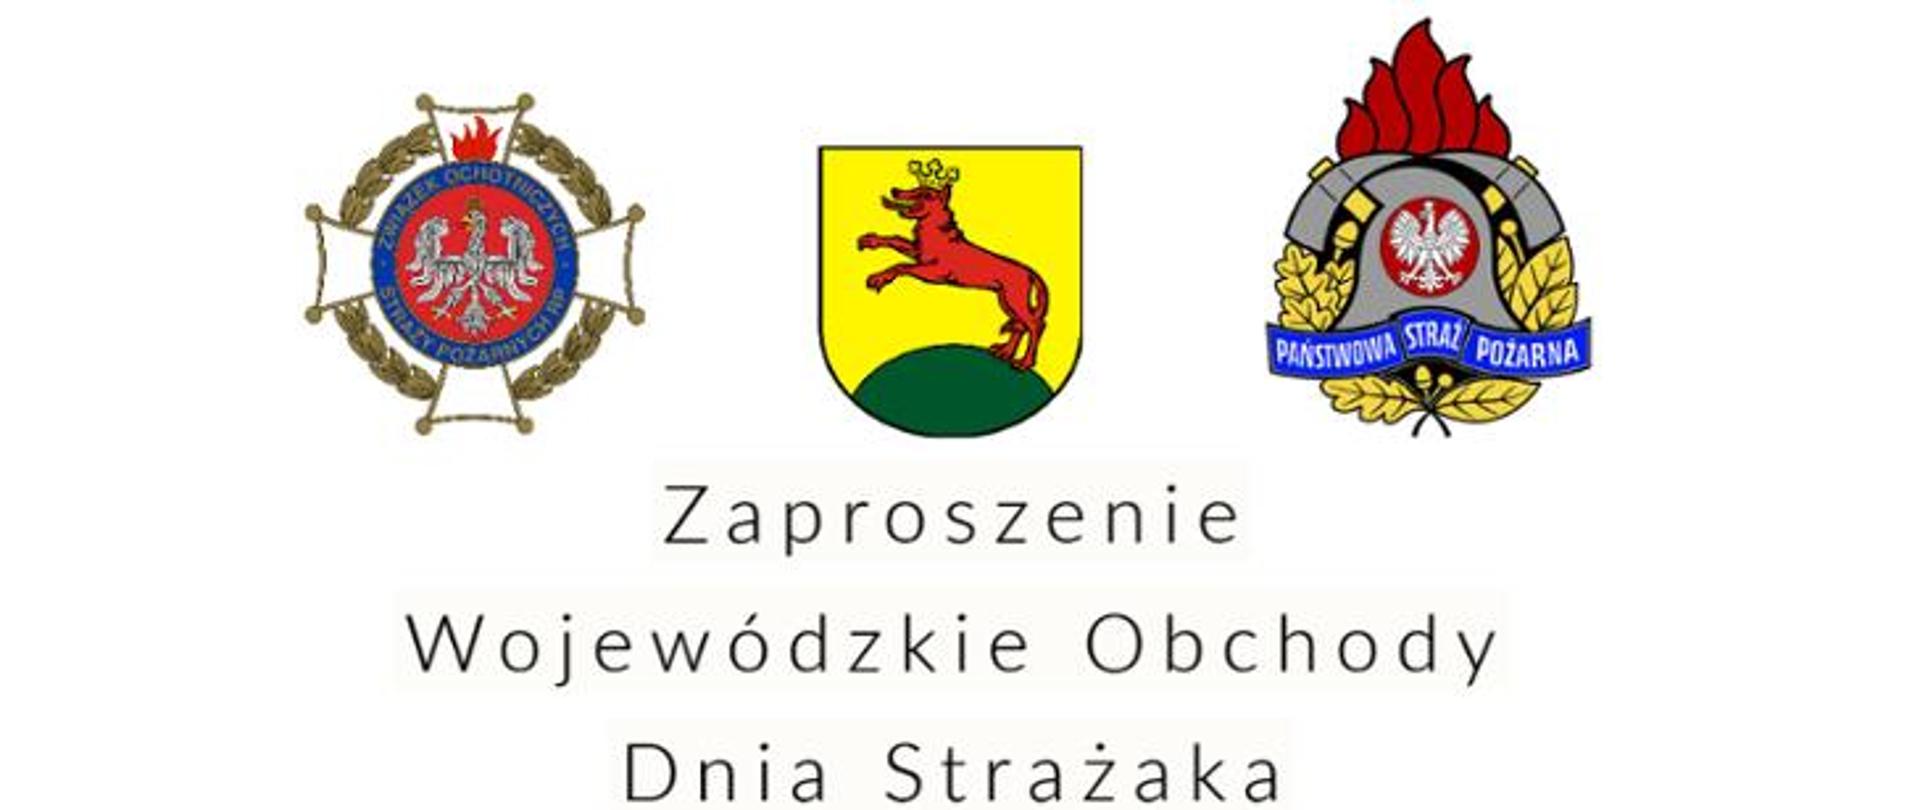 Wojewódzkie obchody dnia strażaka 2022. Zaproszenie.